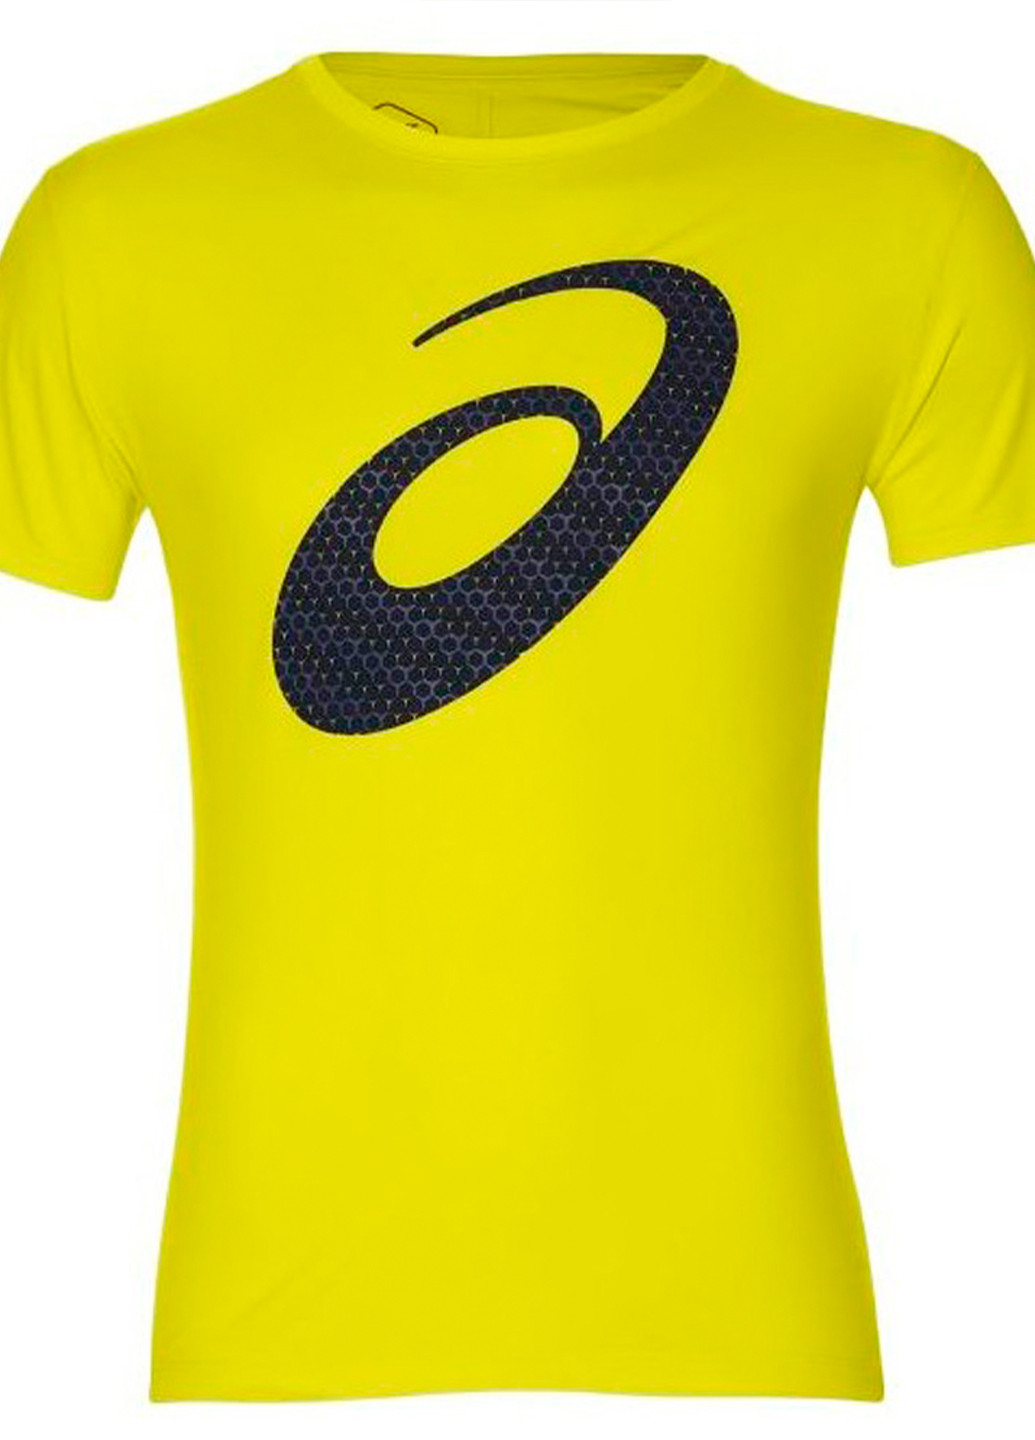 Желтая мужская футболка Asics Silver Graphic